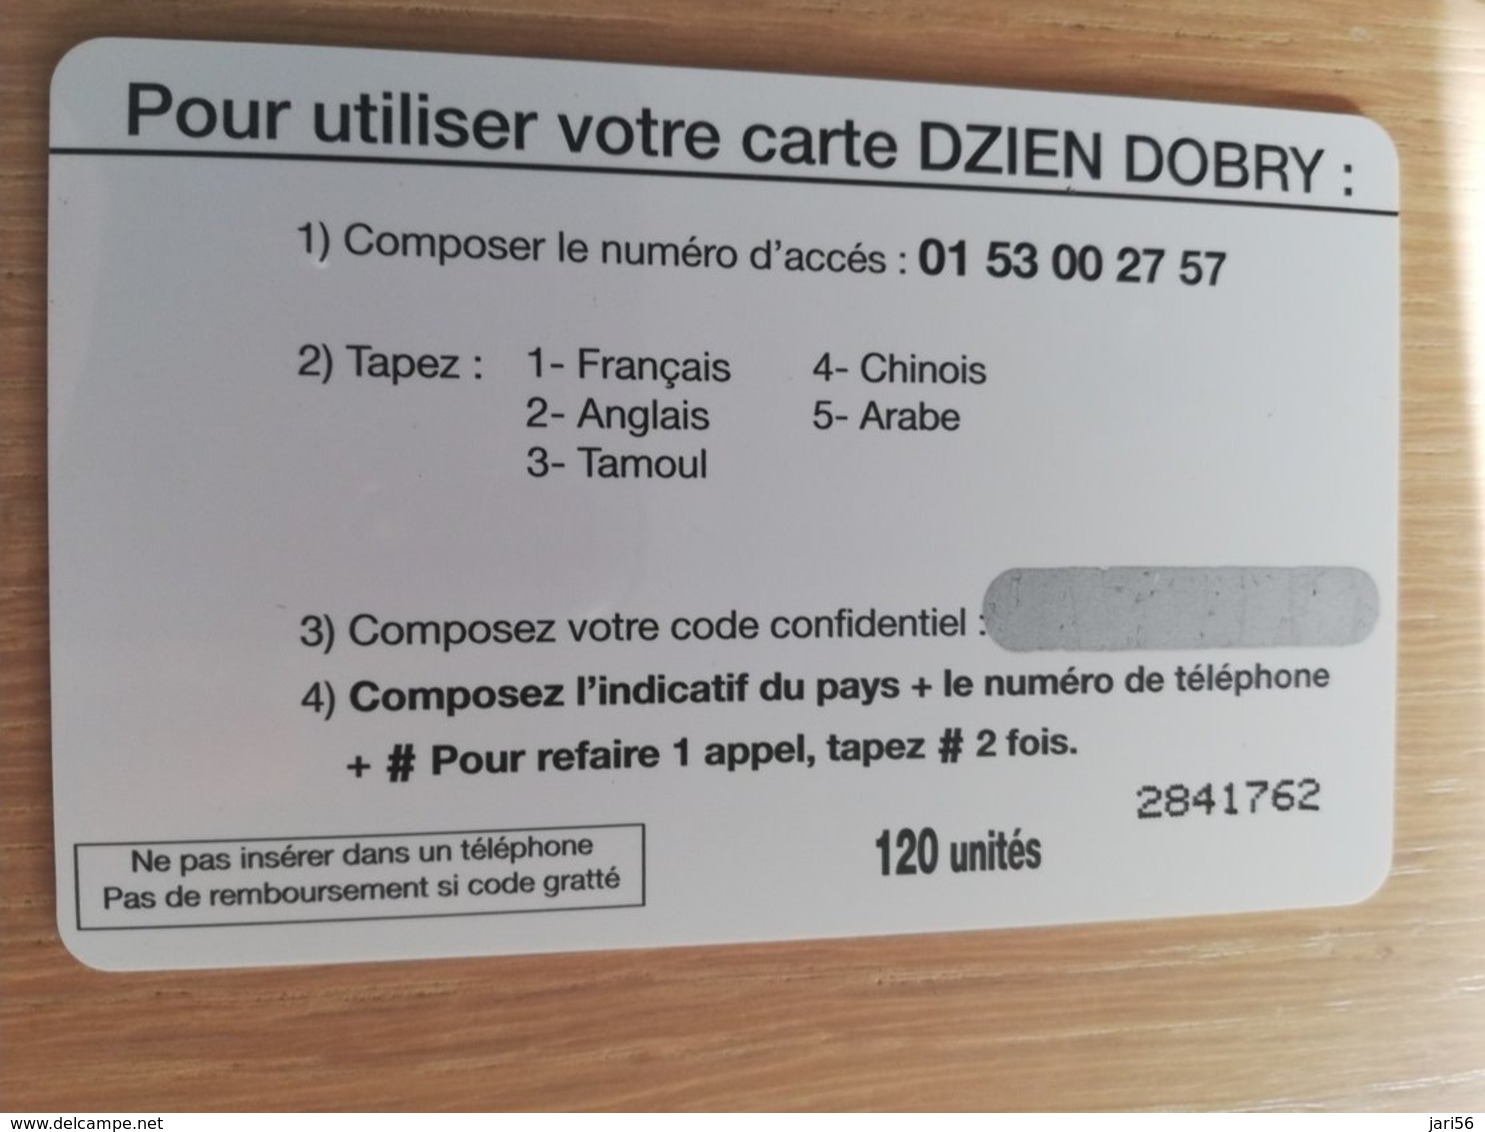 FRANCE/FRANKRIJK  DZIEN DORY PLANE  AUTOBUS  120 UNITES  PREPAID  MINT     ** 1514** - Mobicartes (GSM/SIM)